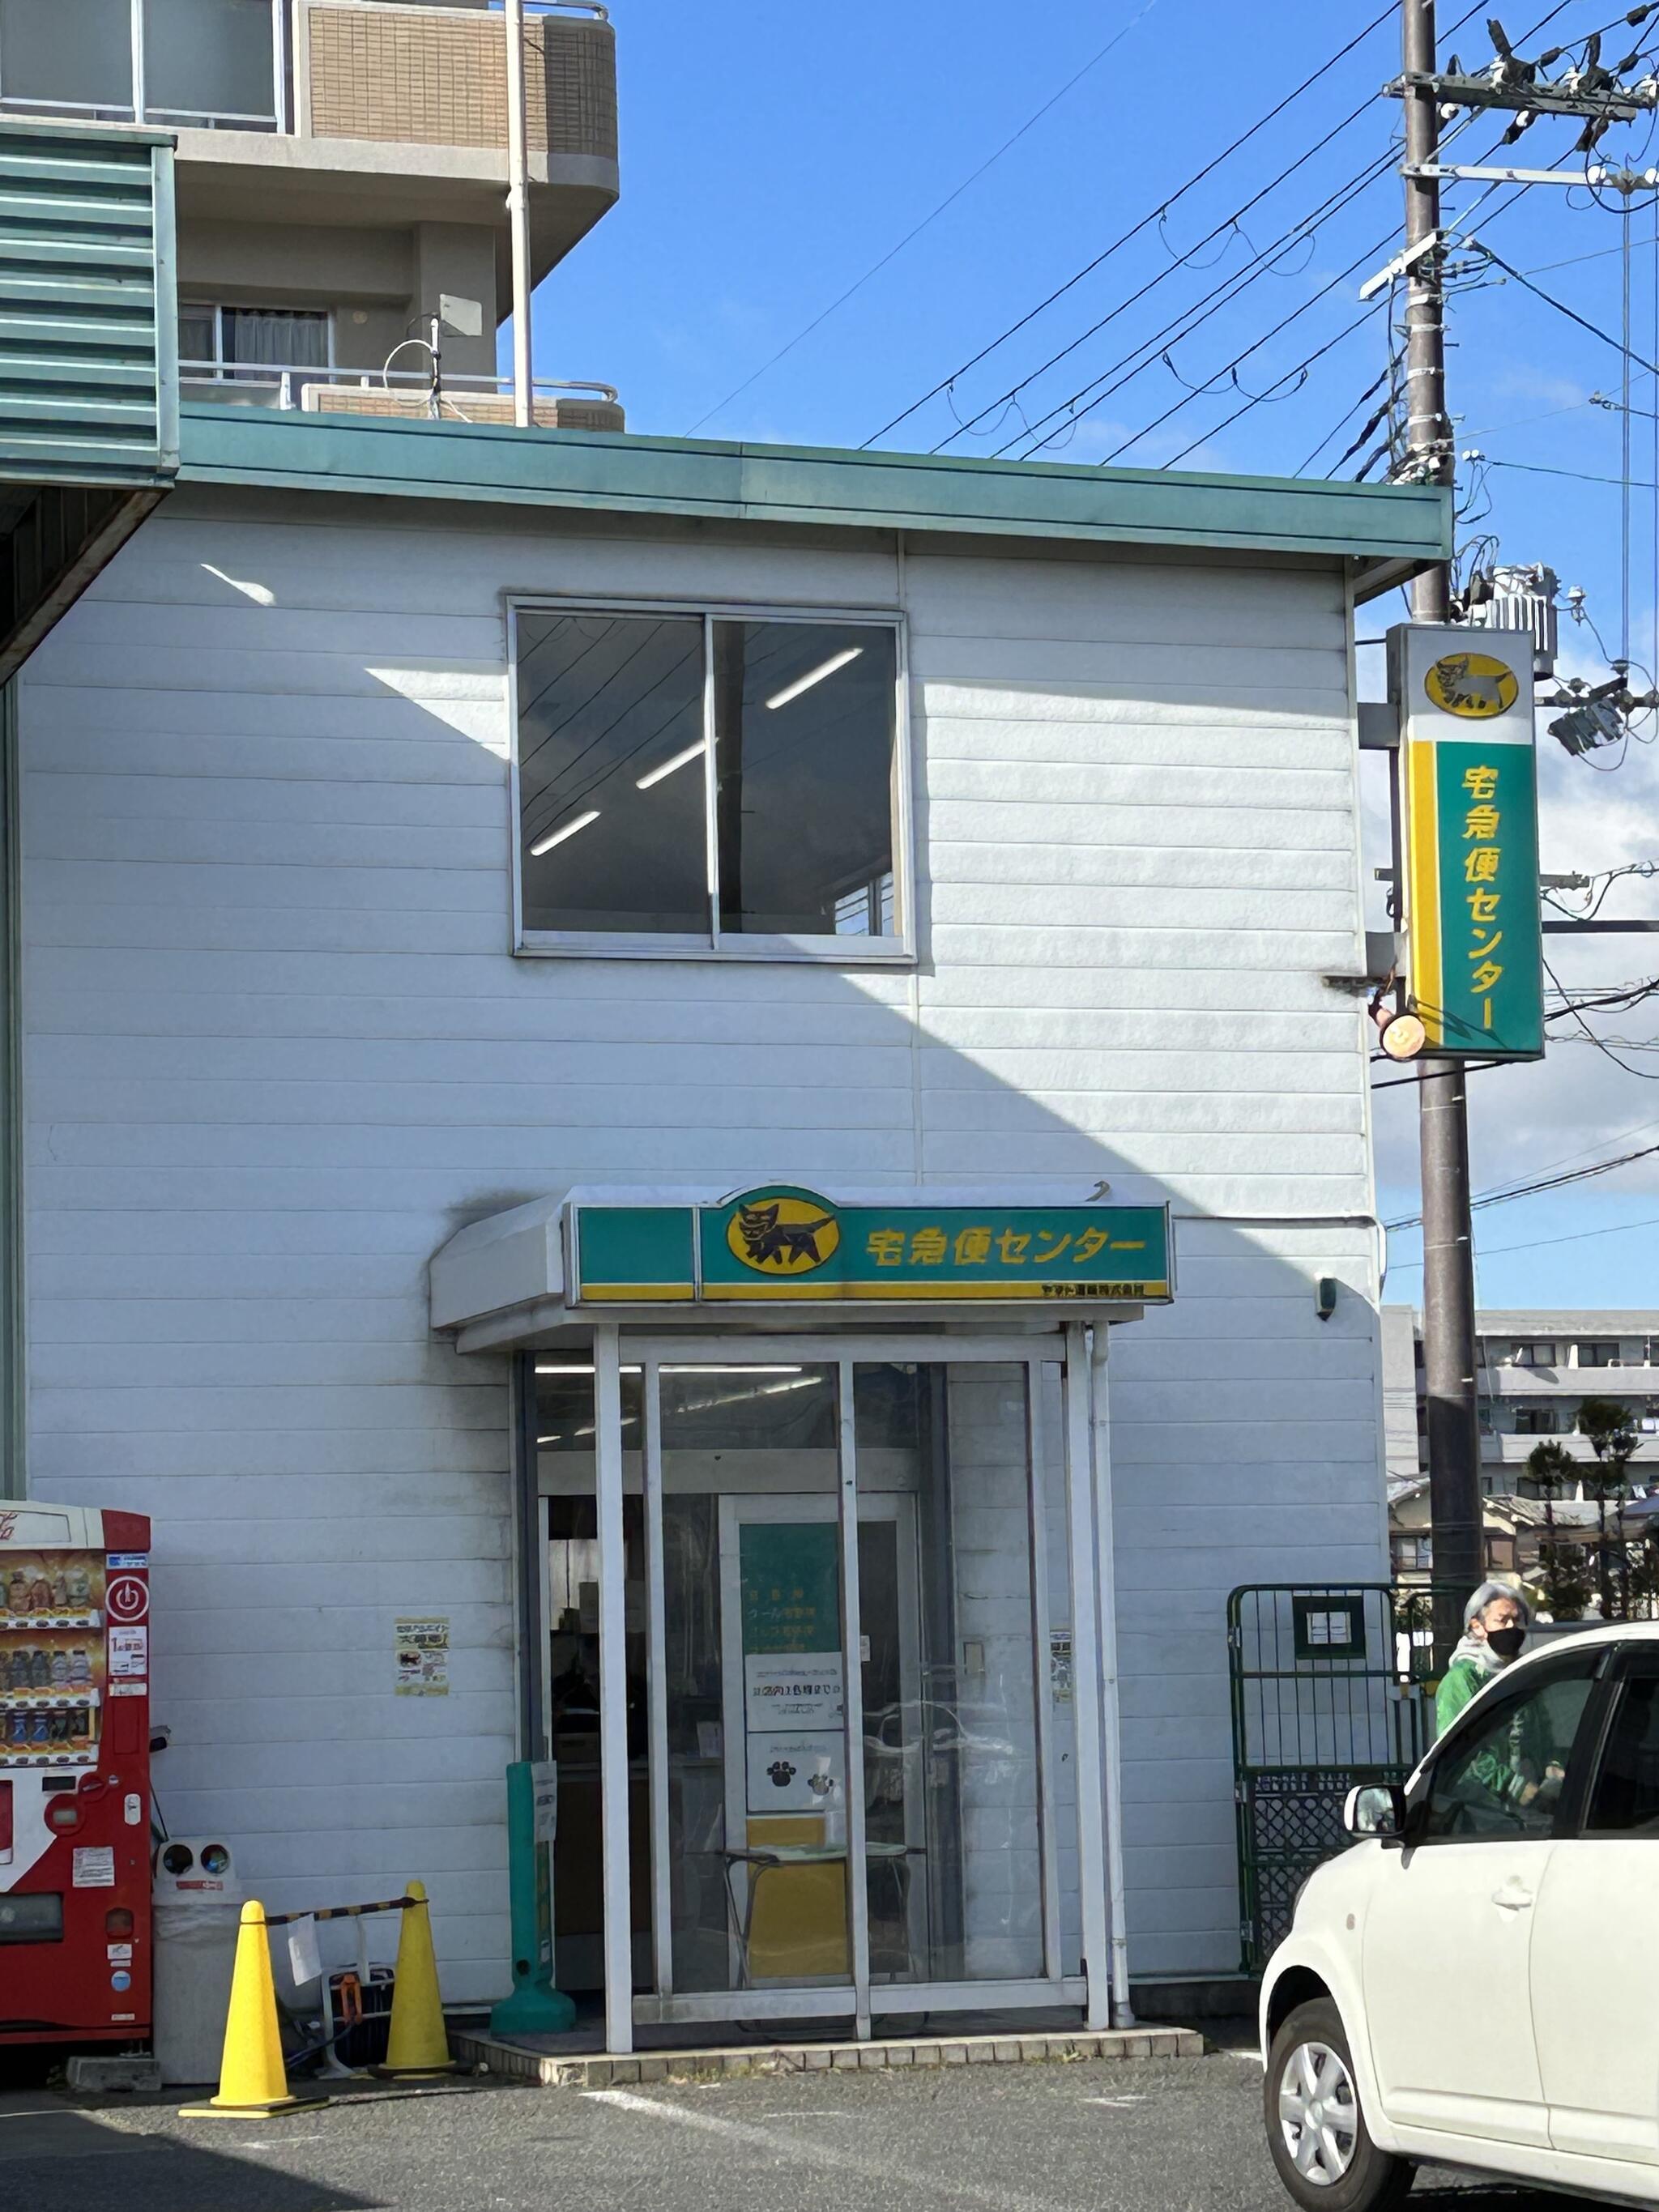 ヤマト運輸 大和高田営業所(柿本)の代表写真2